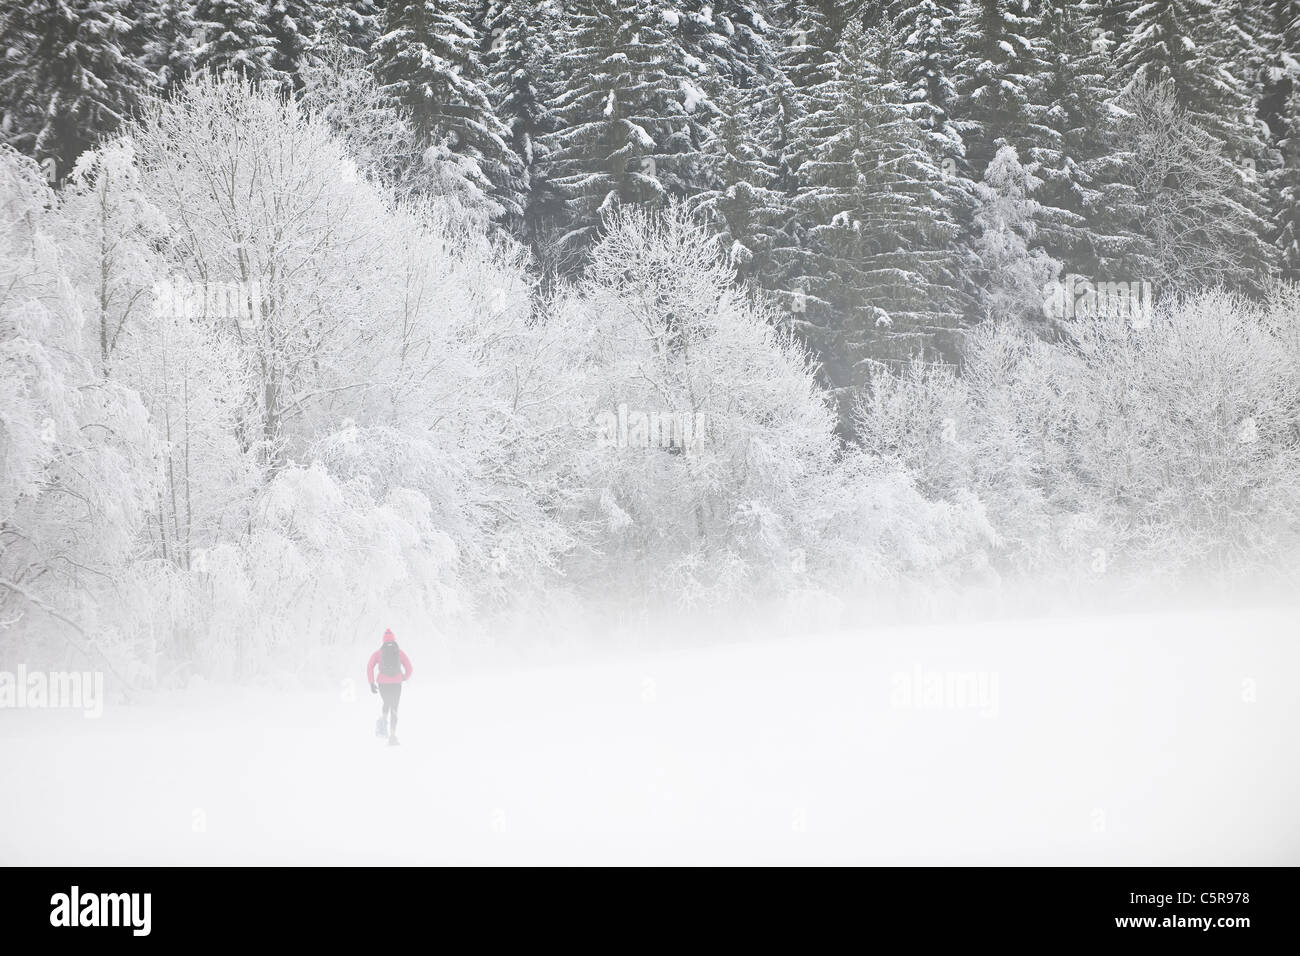 Une personne de la raquette dans une forêt alpine misty. Banque D'Images